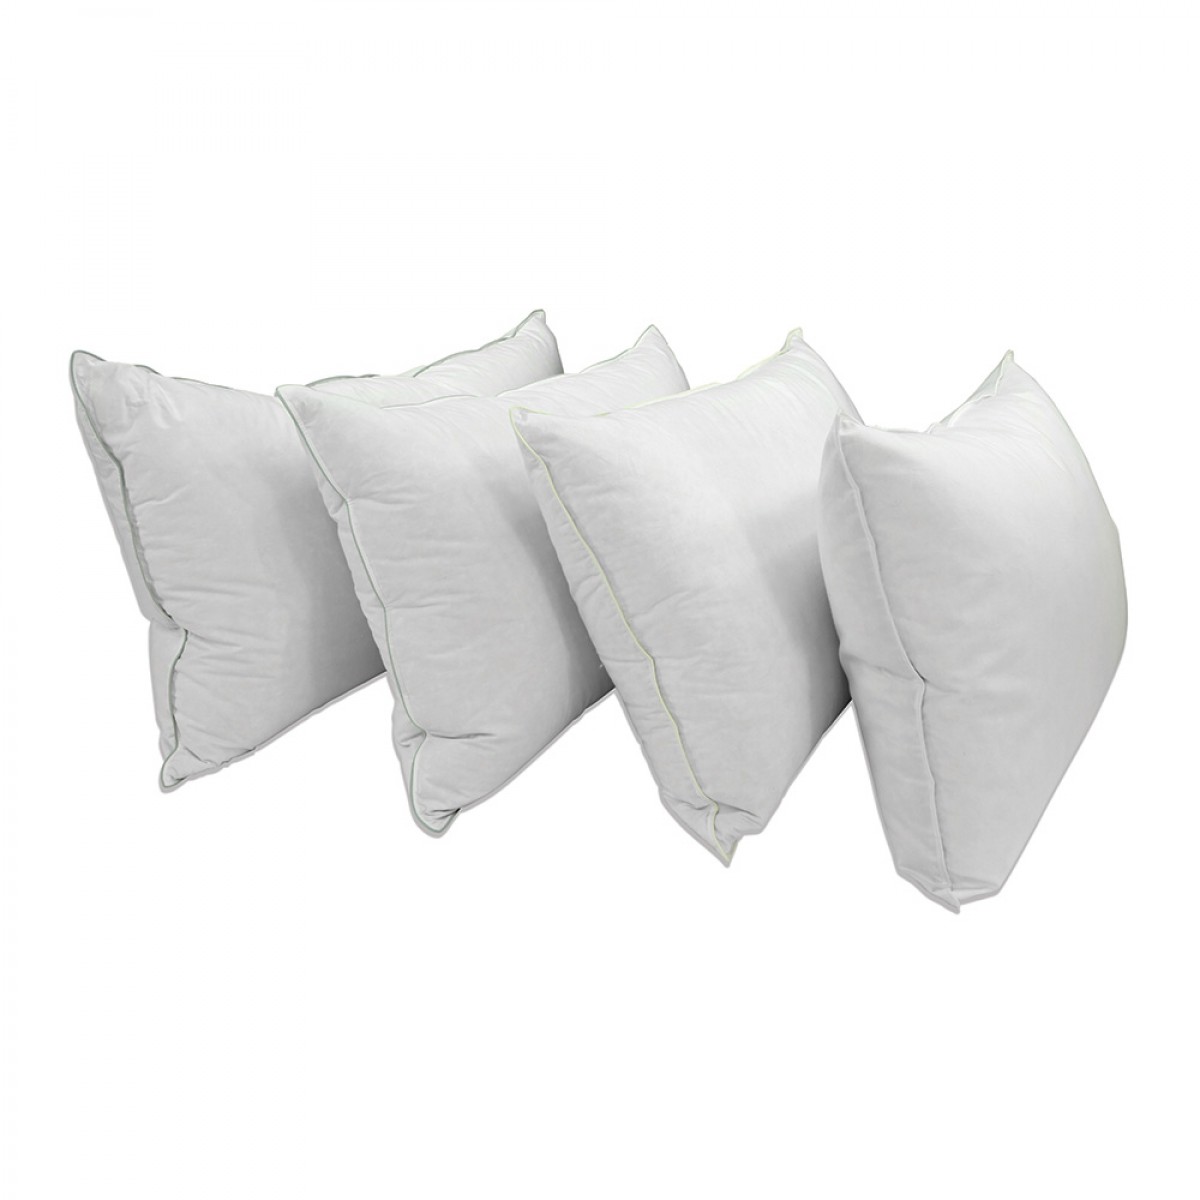 Manchester Mills Down Dreams Standard Size Medium Firm Pillow Set 2 Pillows 